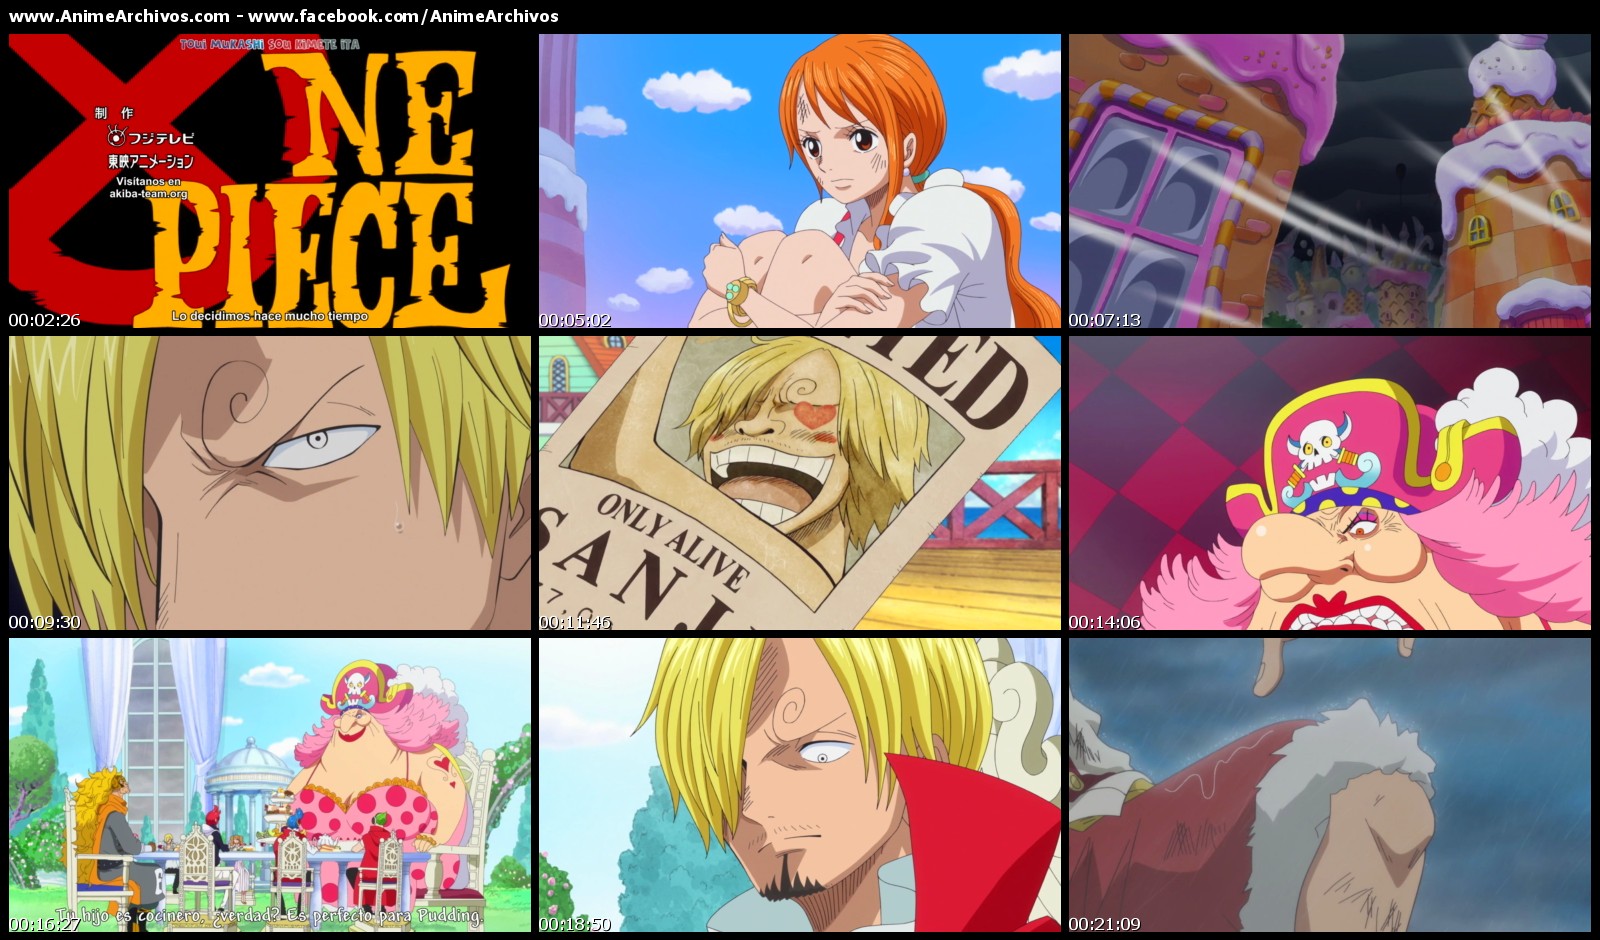 One Piece 809